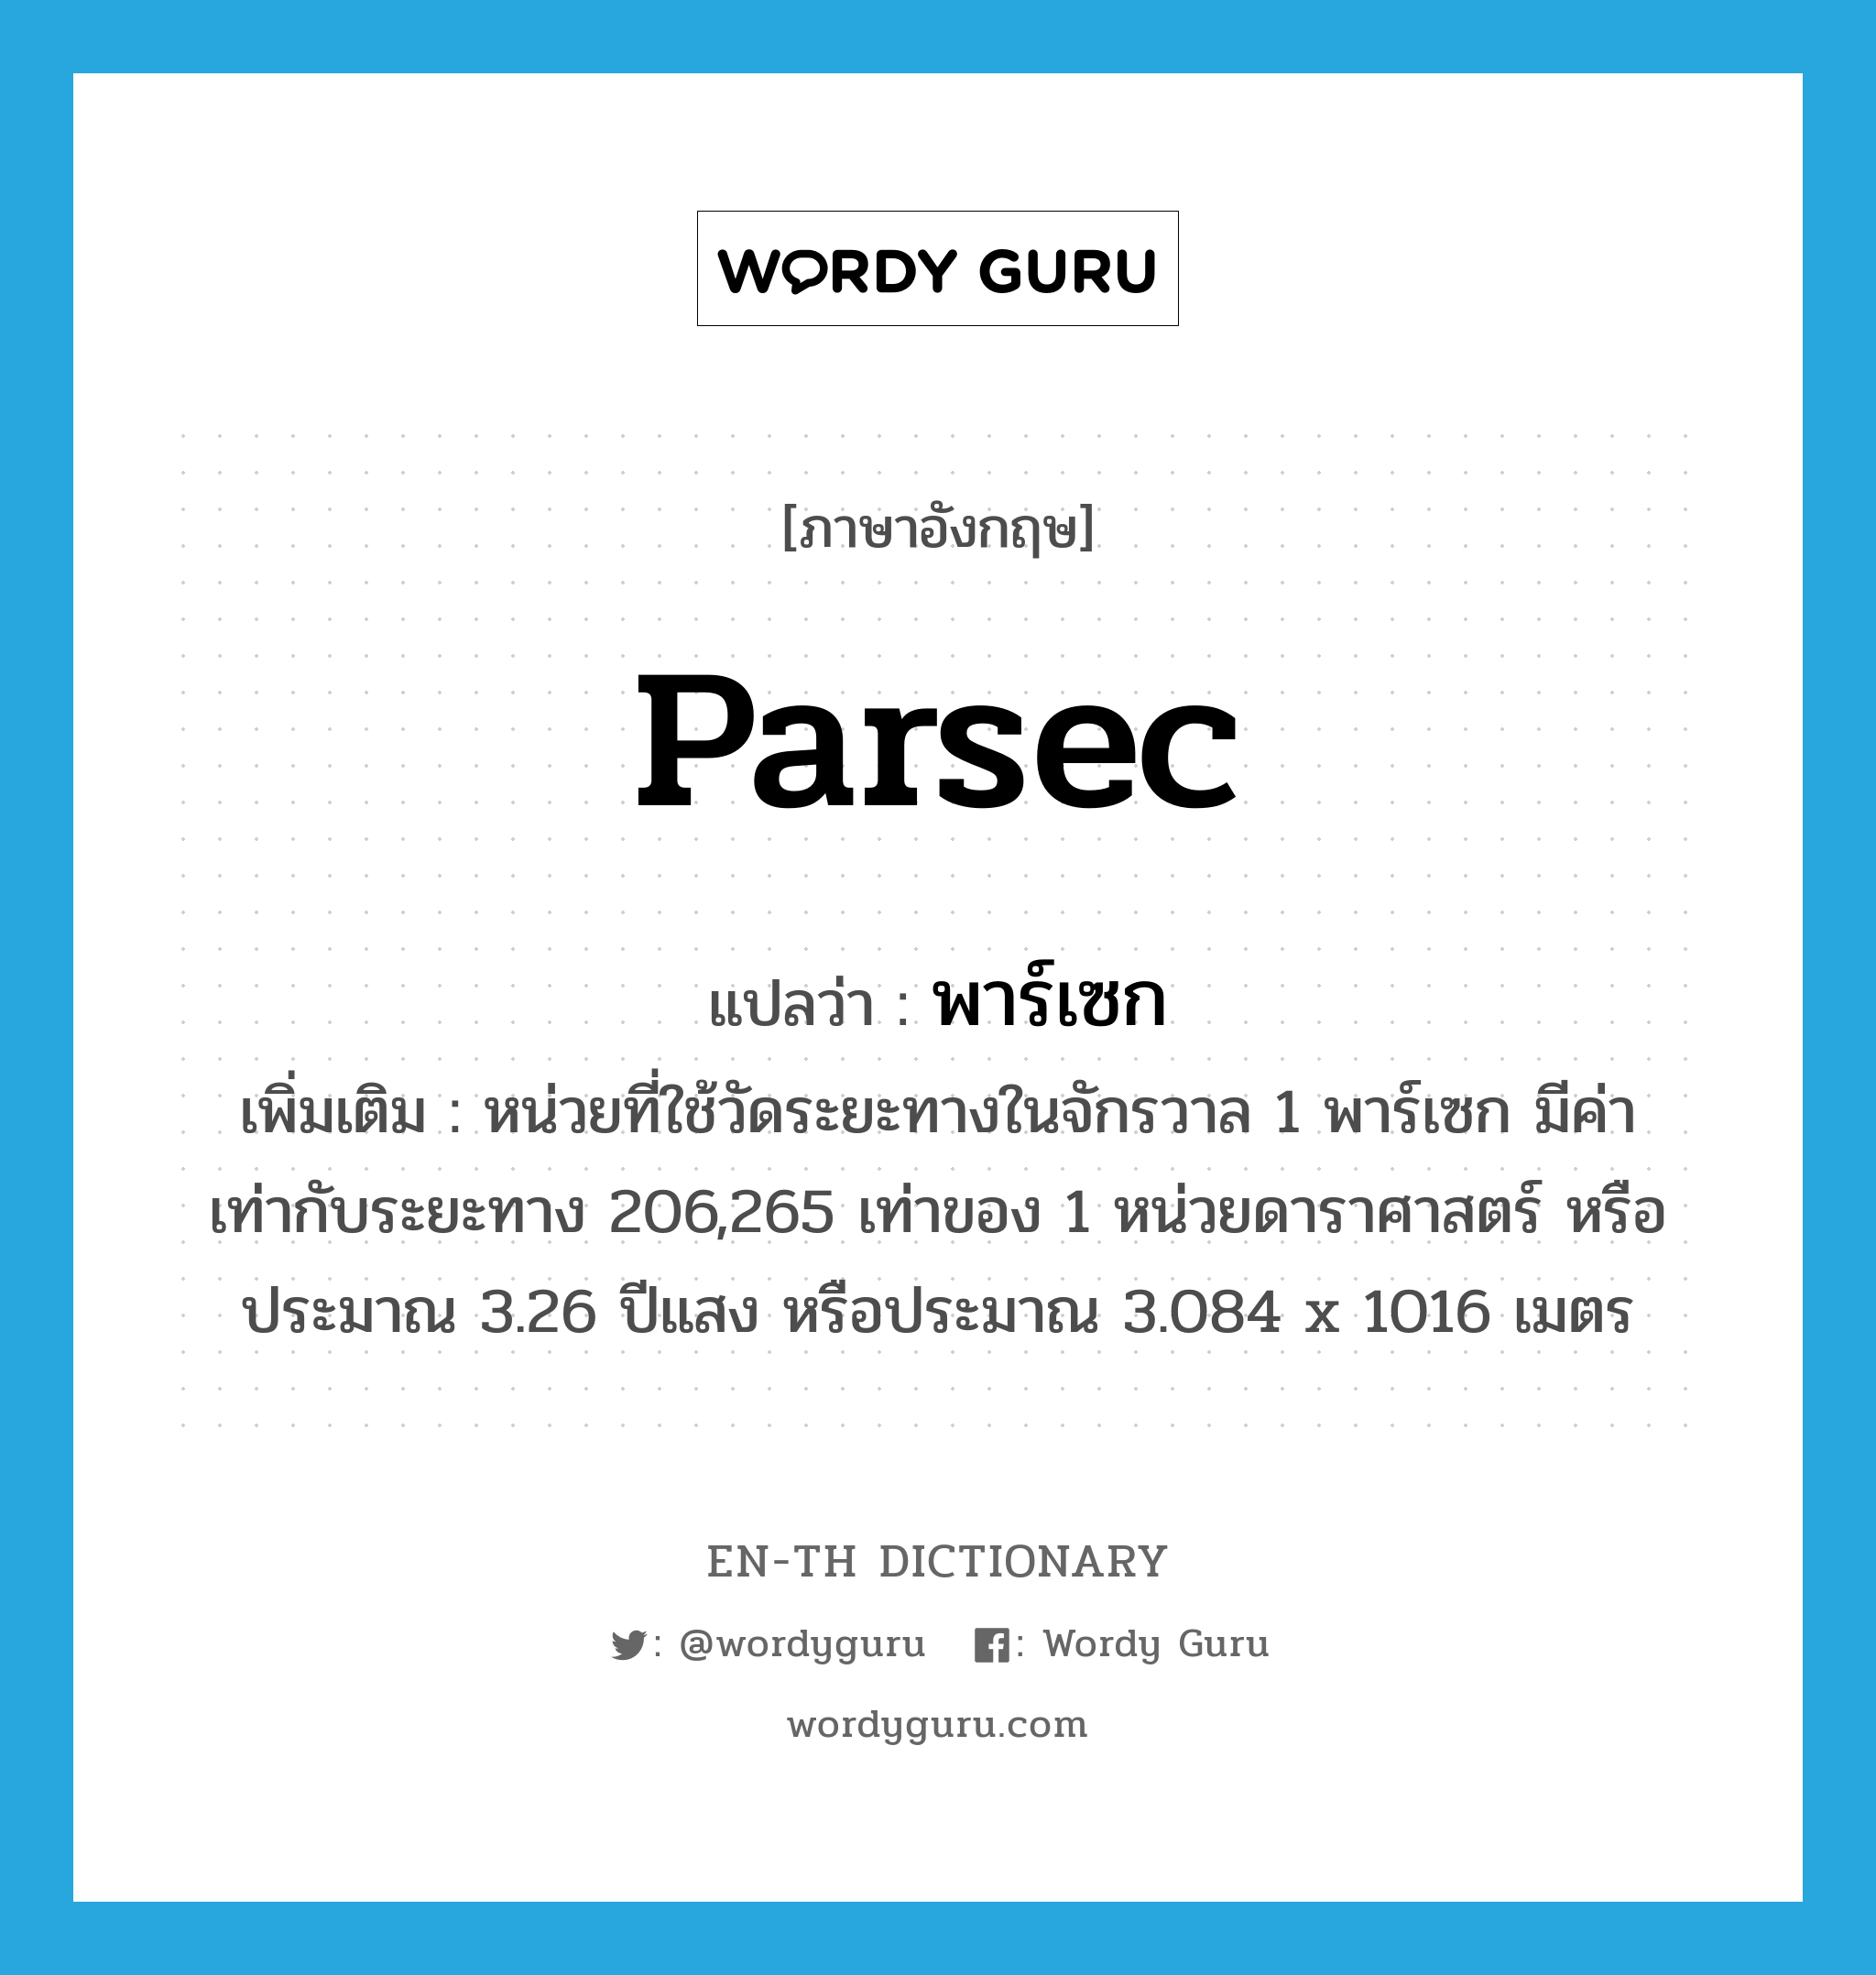 พาร์เซก ภาษาอังกฤษ?, คำศัพท์ภาษาอังกฤษ พาร์เซก แปลว่า parsec ประเภท CLAS เพิ่มเติม หน่วยที่ใช้วัดระยะทางในจักรวาล 1 พาร์เซก มีค่าเท่ากับระยะทาง 206,265 เท่าของ 1 หน่วยดาราศาสตร์ หรือประมาณ 3.26 ปีแสง หรือประมาณ 3.084 x 1016 เมตร หมวด CLAS